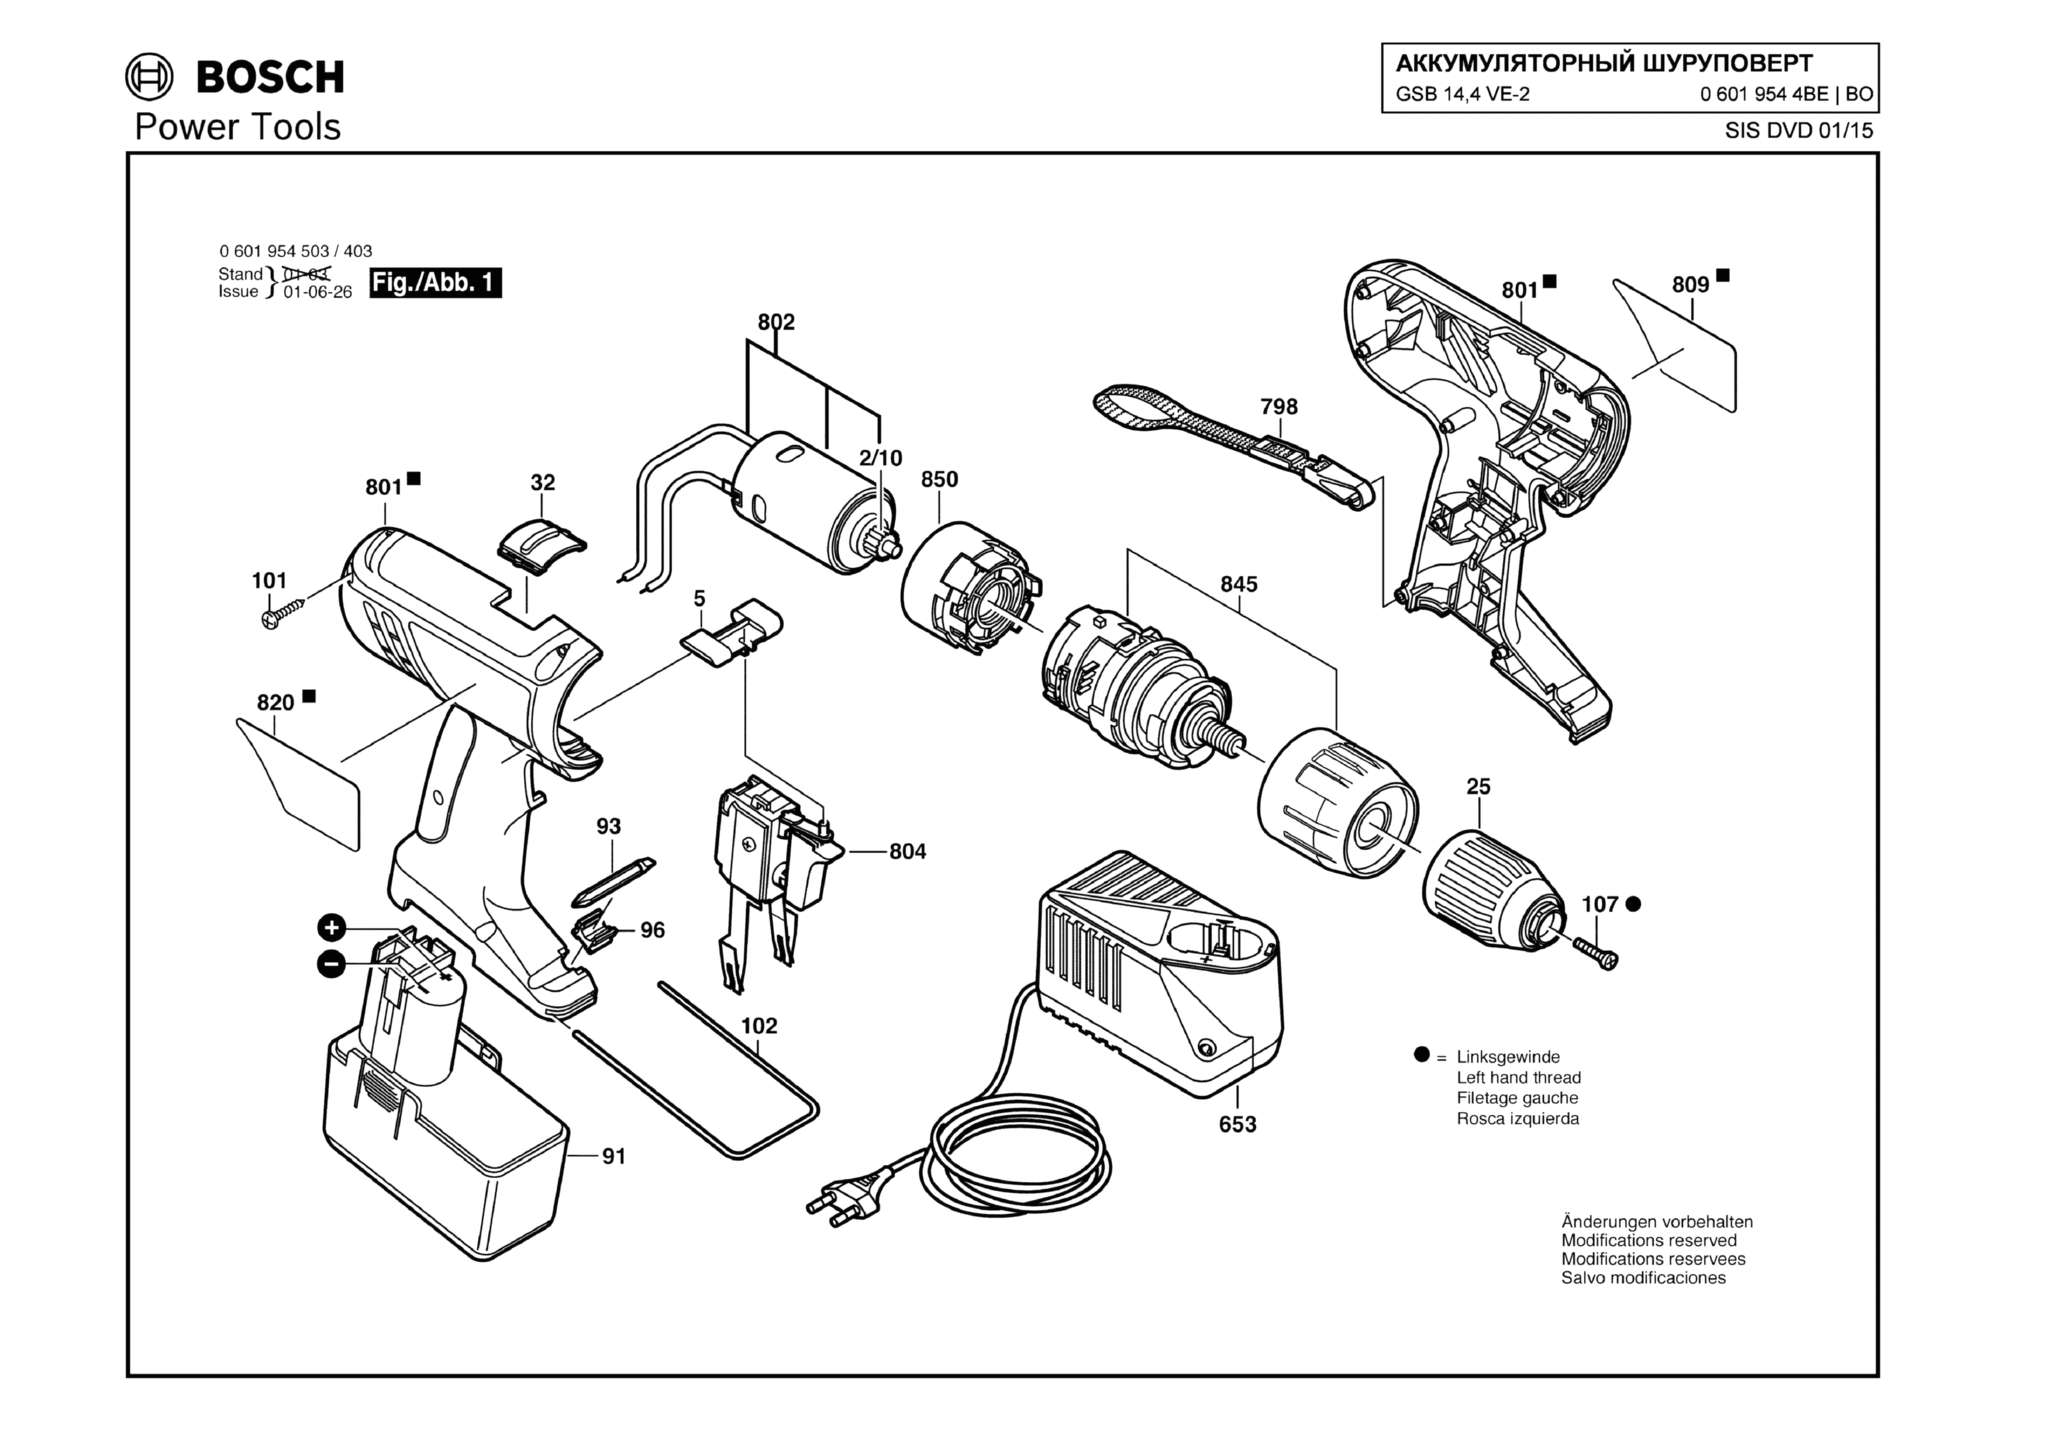 Запчасти, схема и деталировка Bosch GSB 14,4 VE-2 (ТИП 06019544BE)